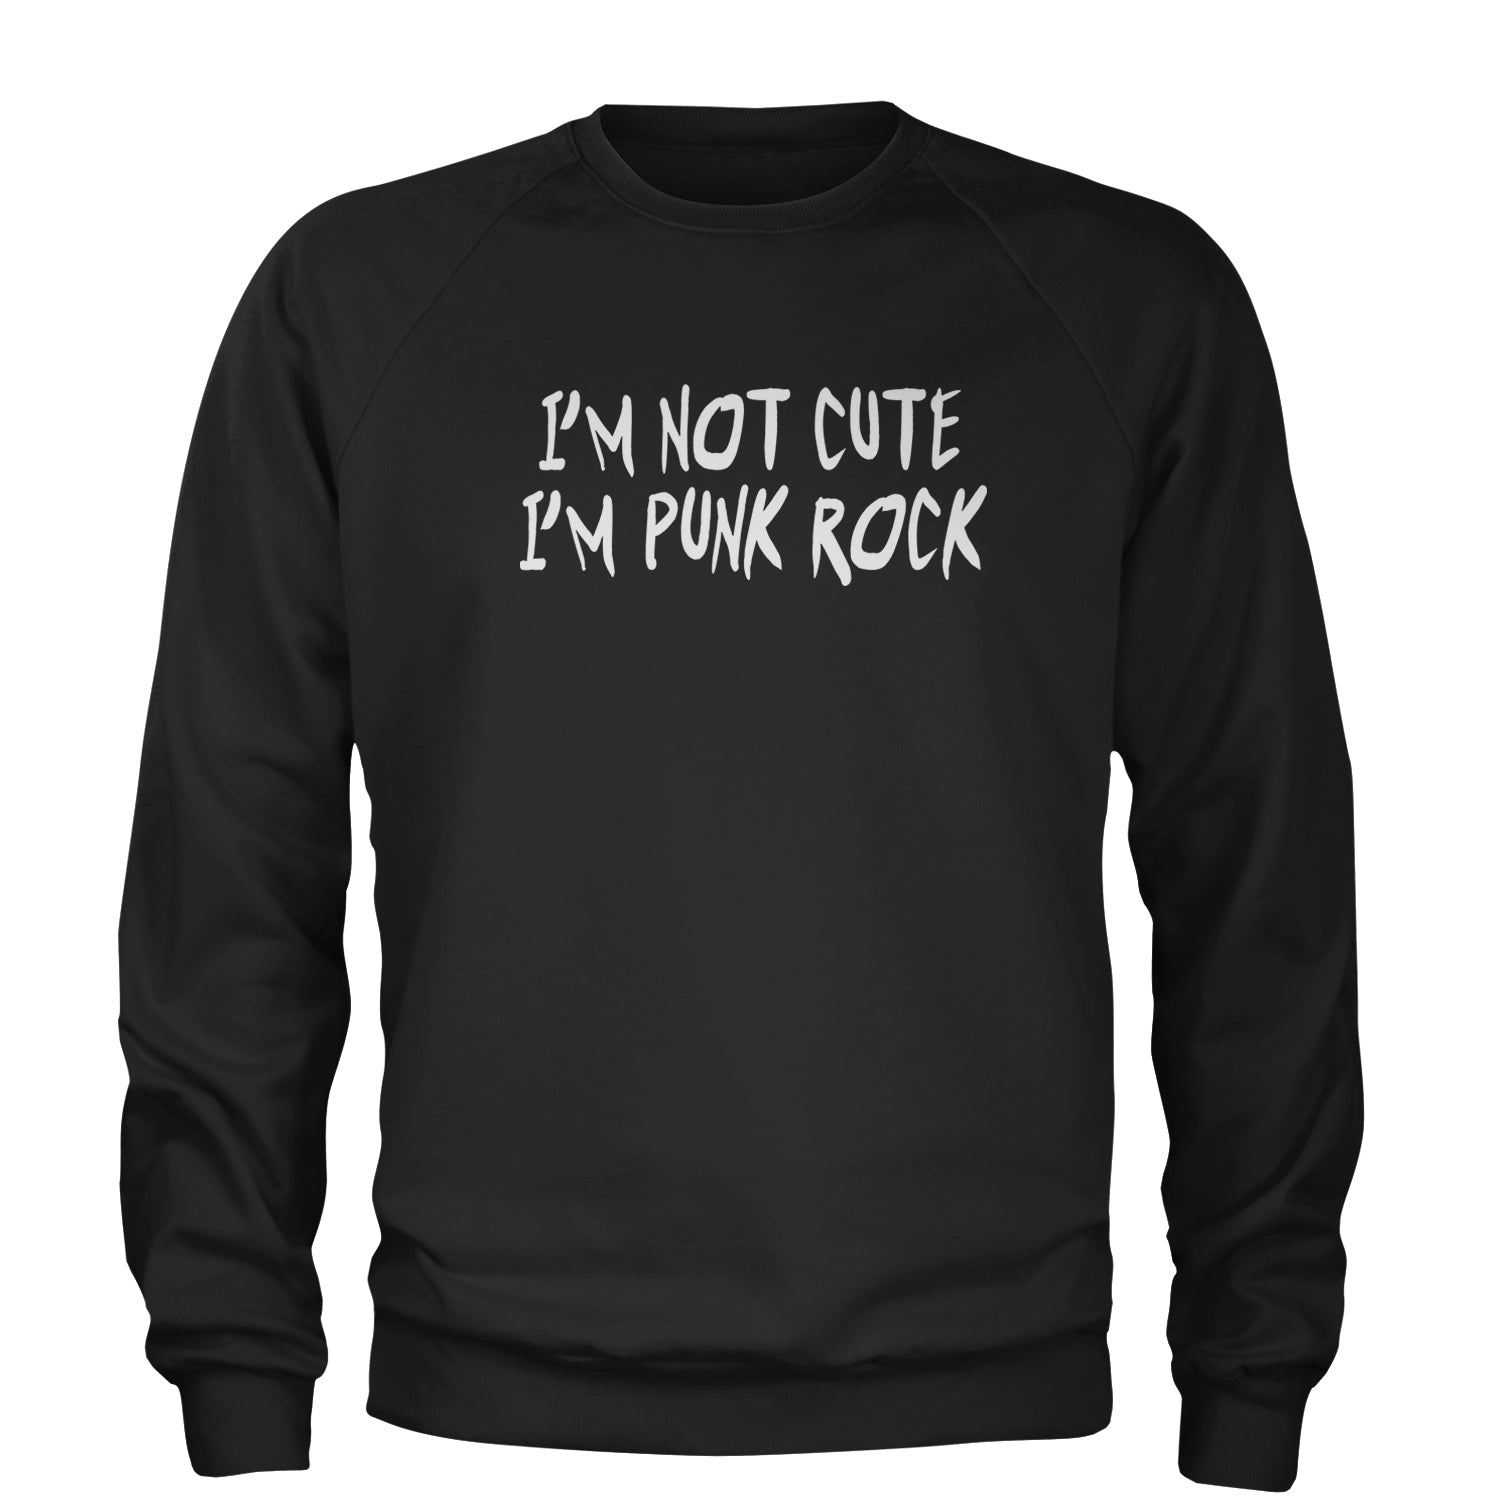 I'm Not Cute, I'm Punk Rock Adult Crewneck Sweatshirt